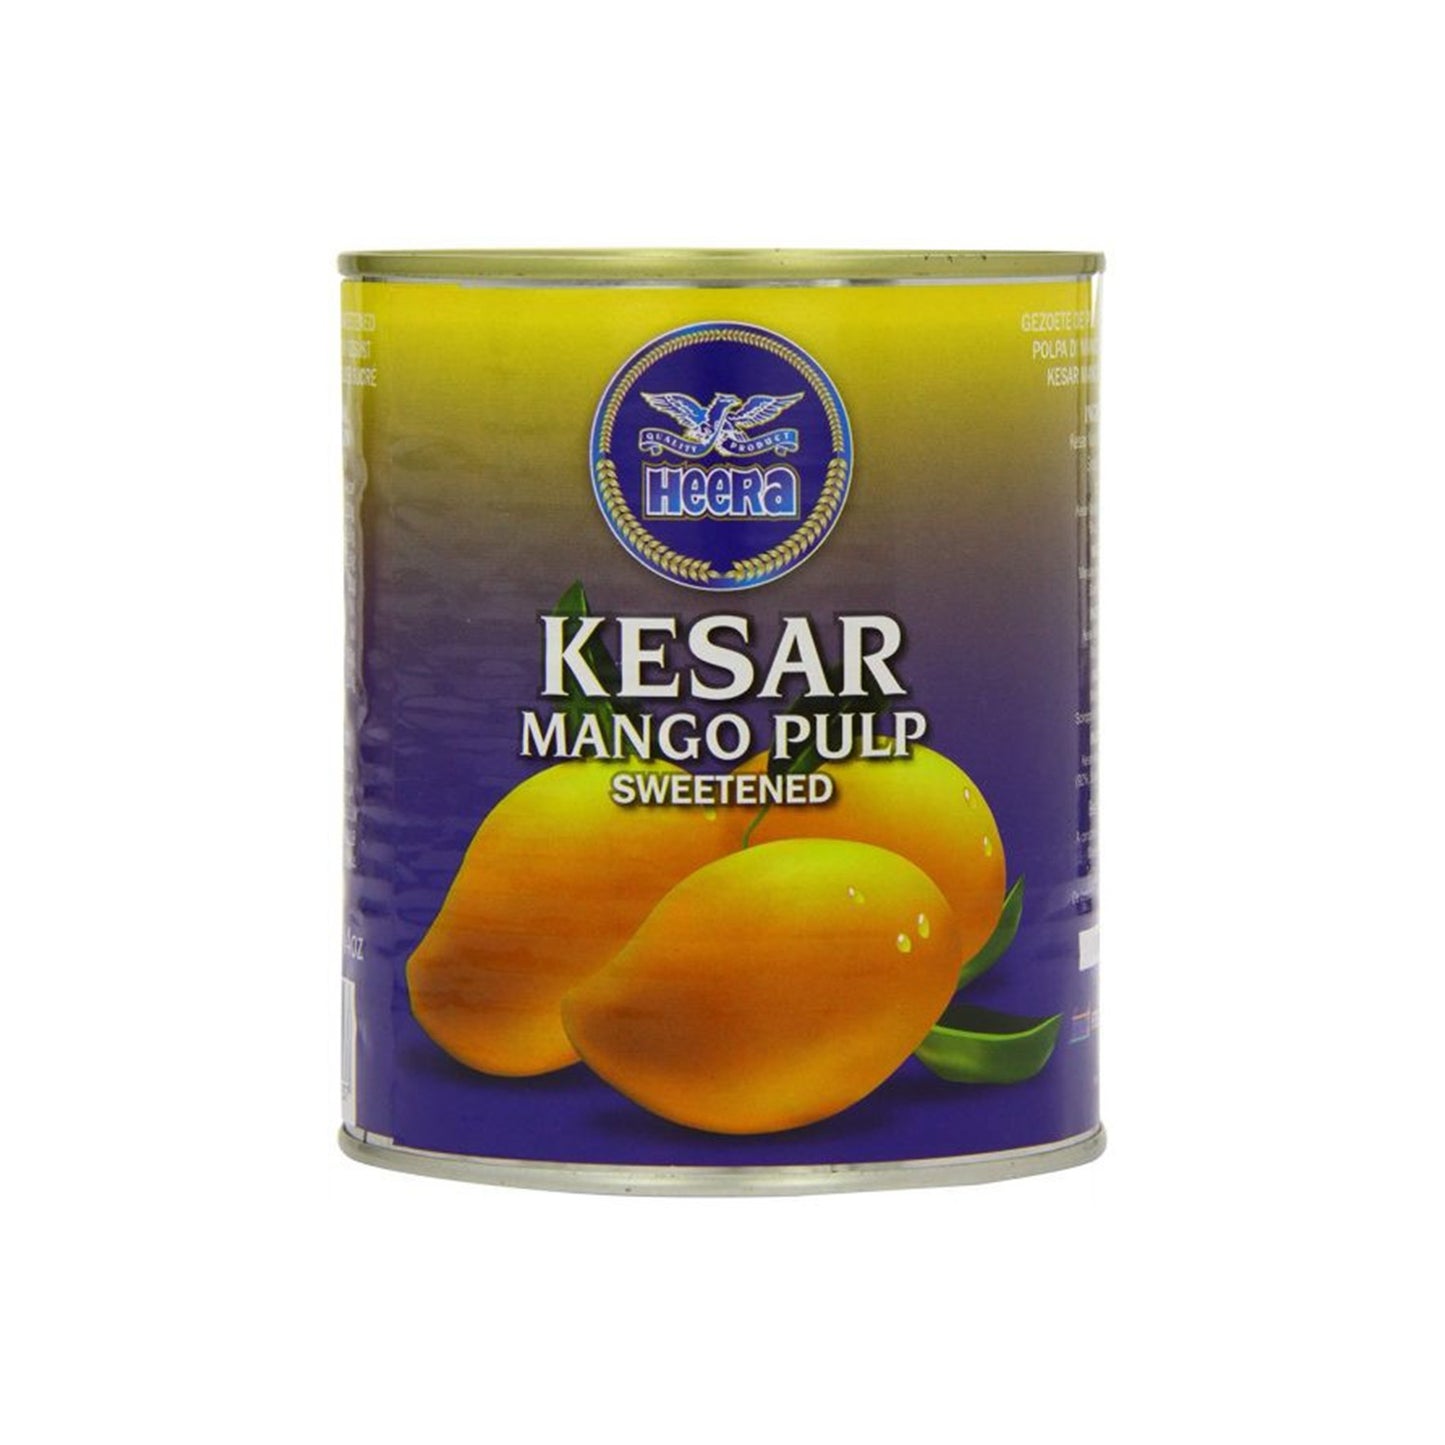 Heera Kesar Mango Pulp Sweetened 850g